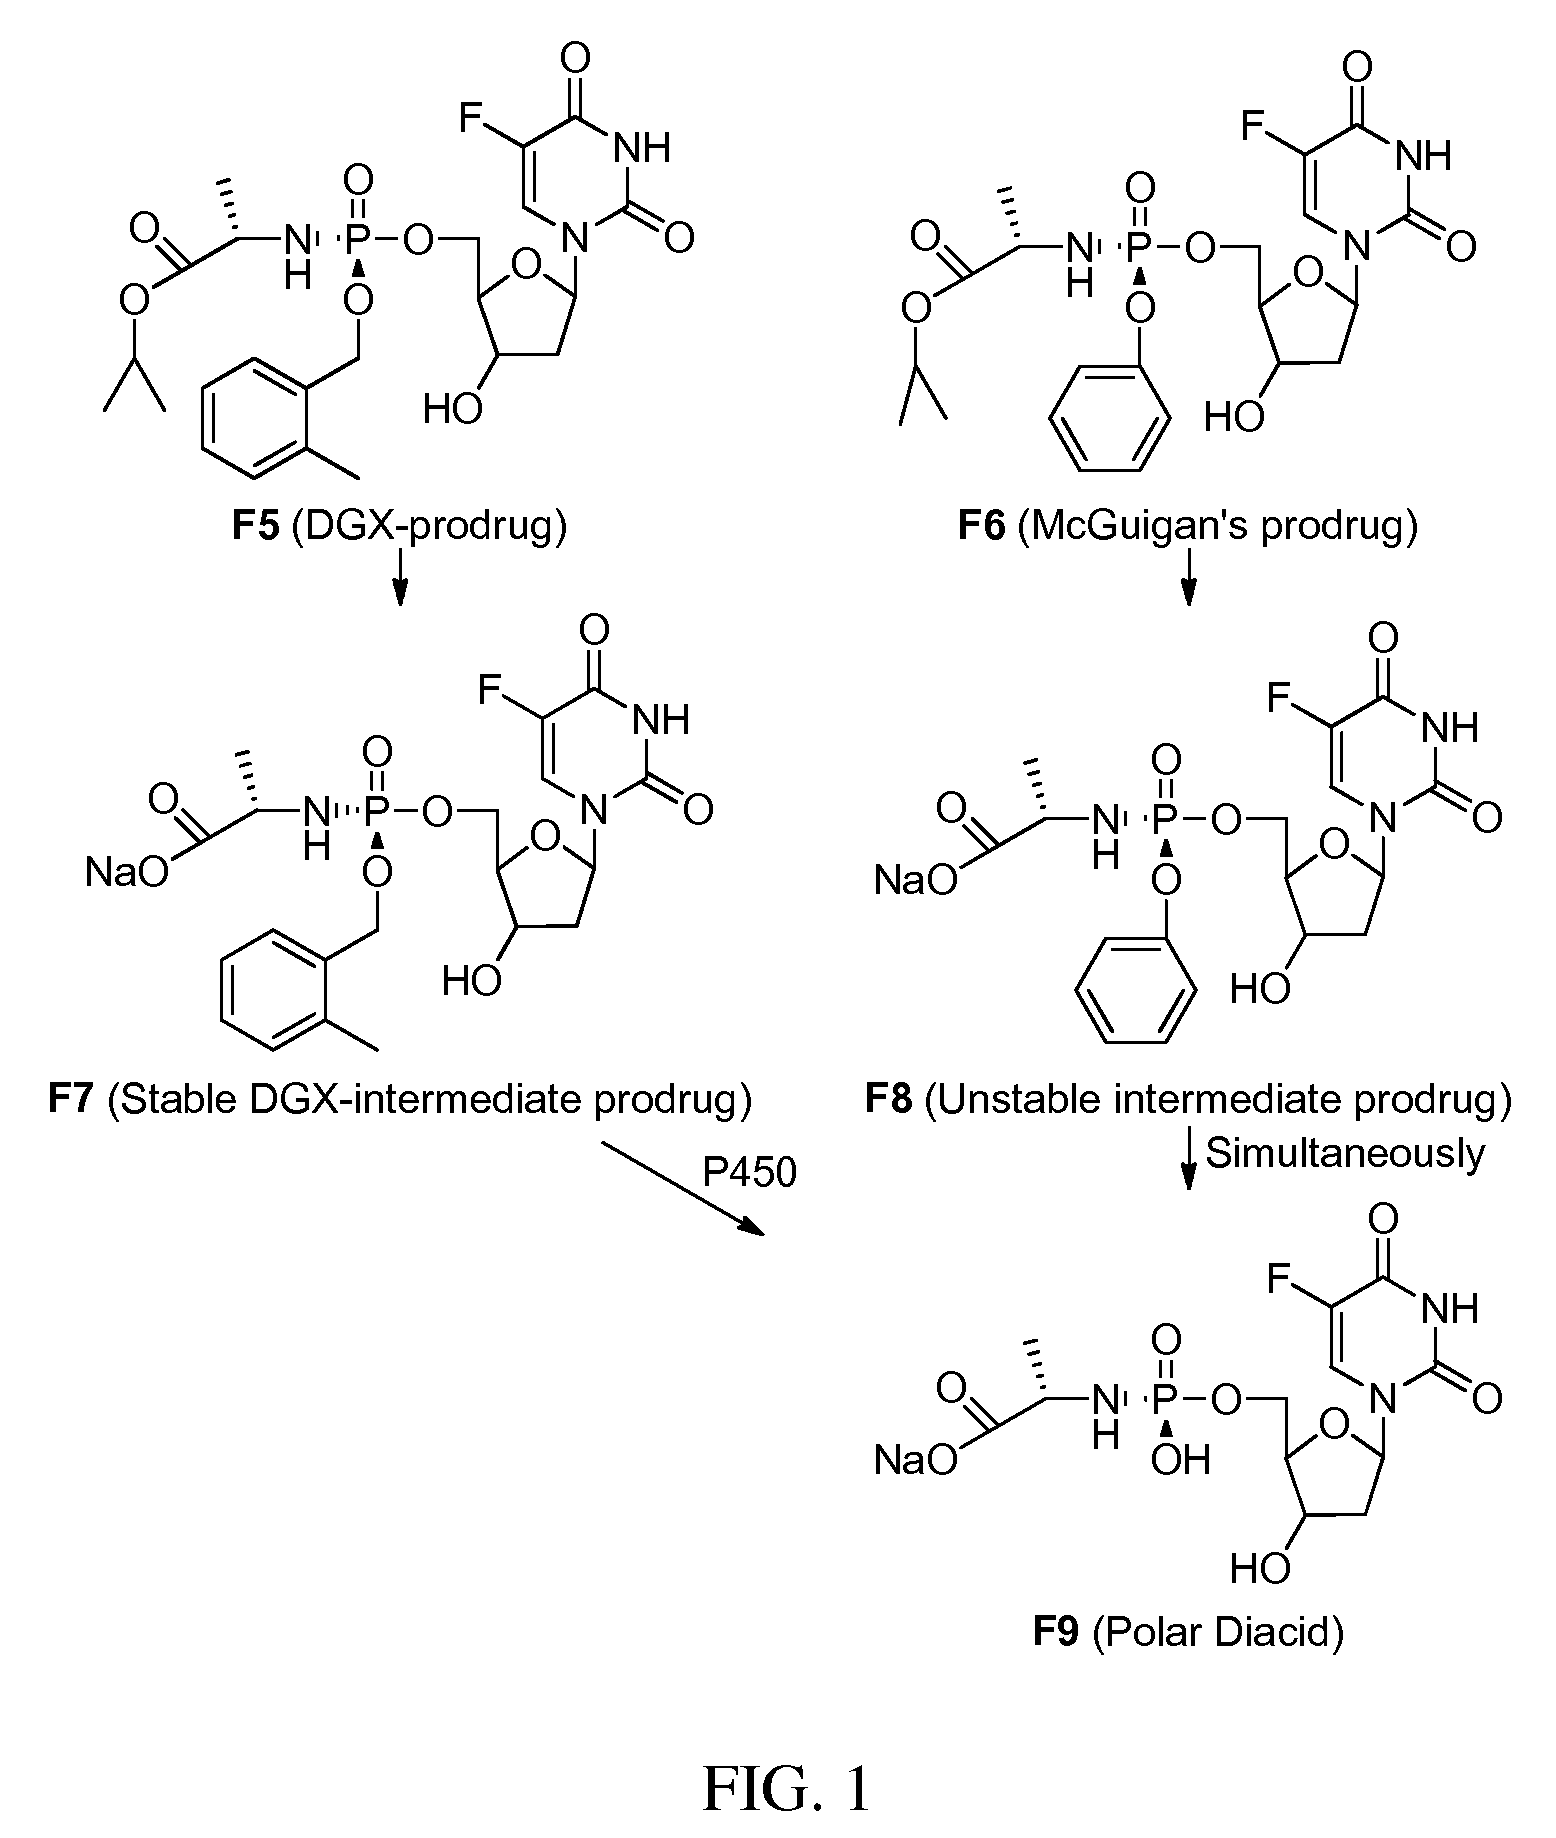 Double-liver-targeting phosphoramidate and phosphonoamidate prodrugs